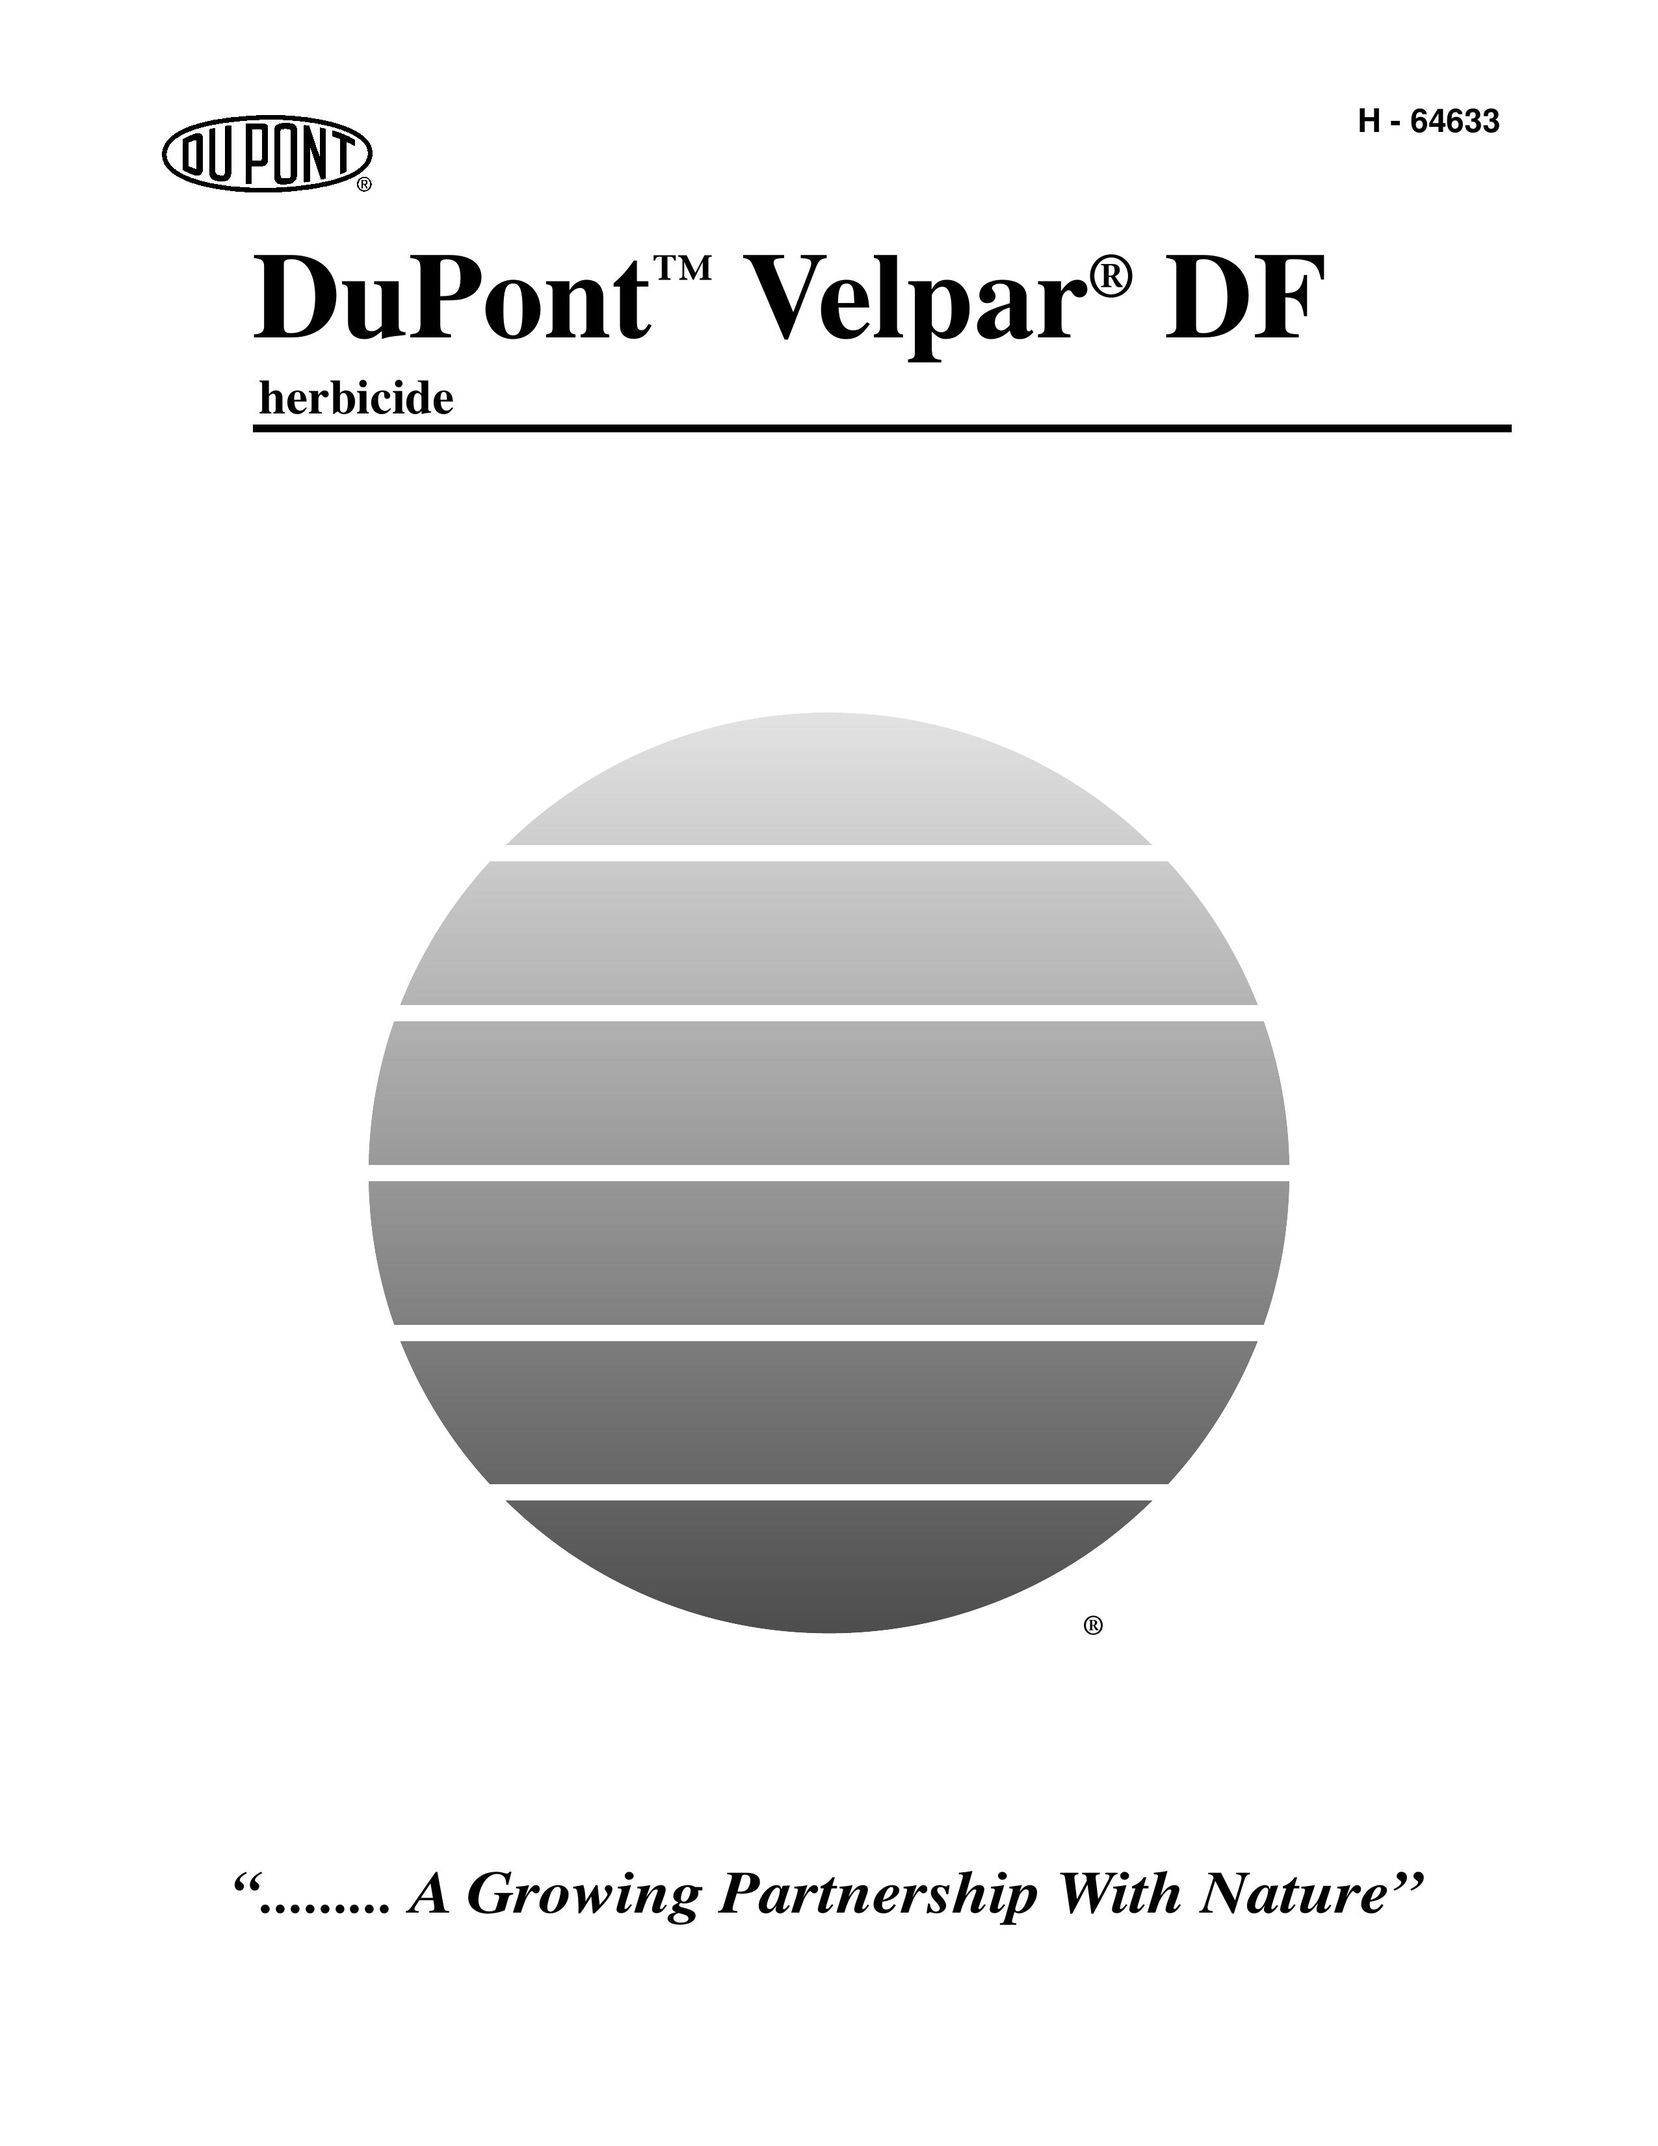 Giant DuPontTM Velpar Stroller User Manual